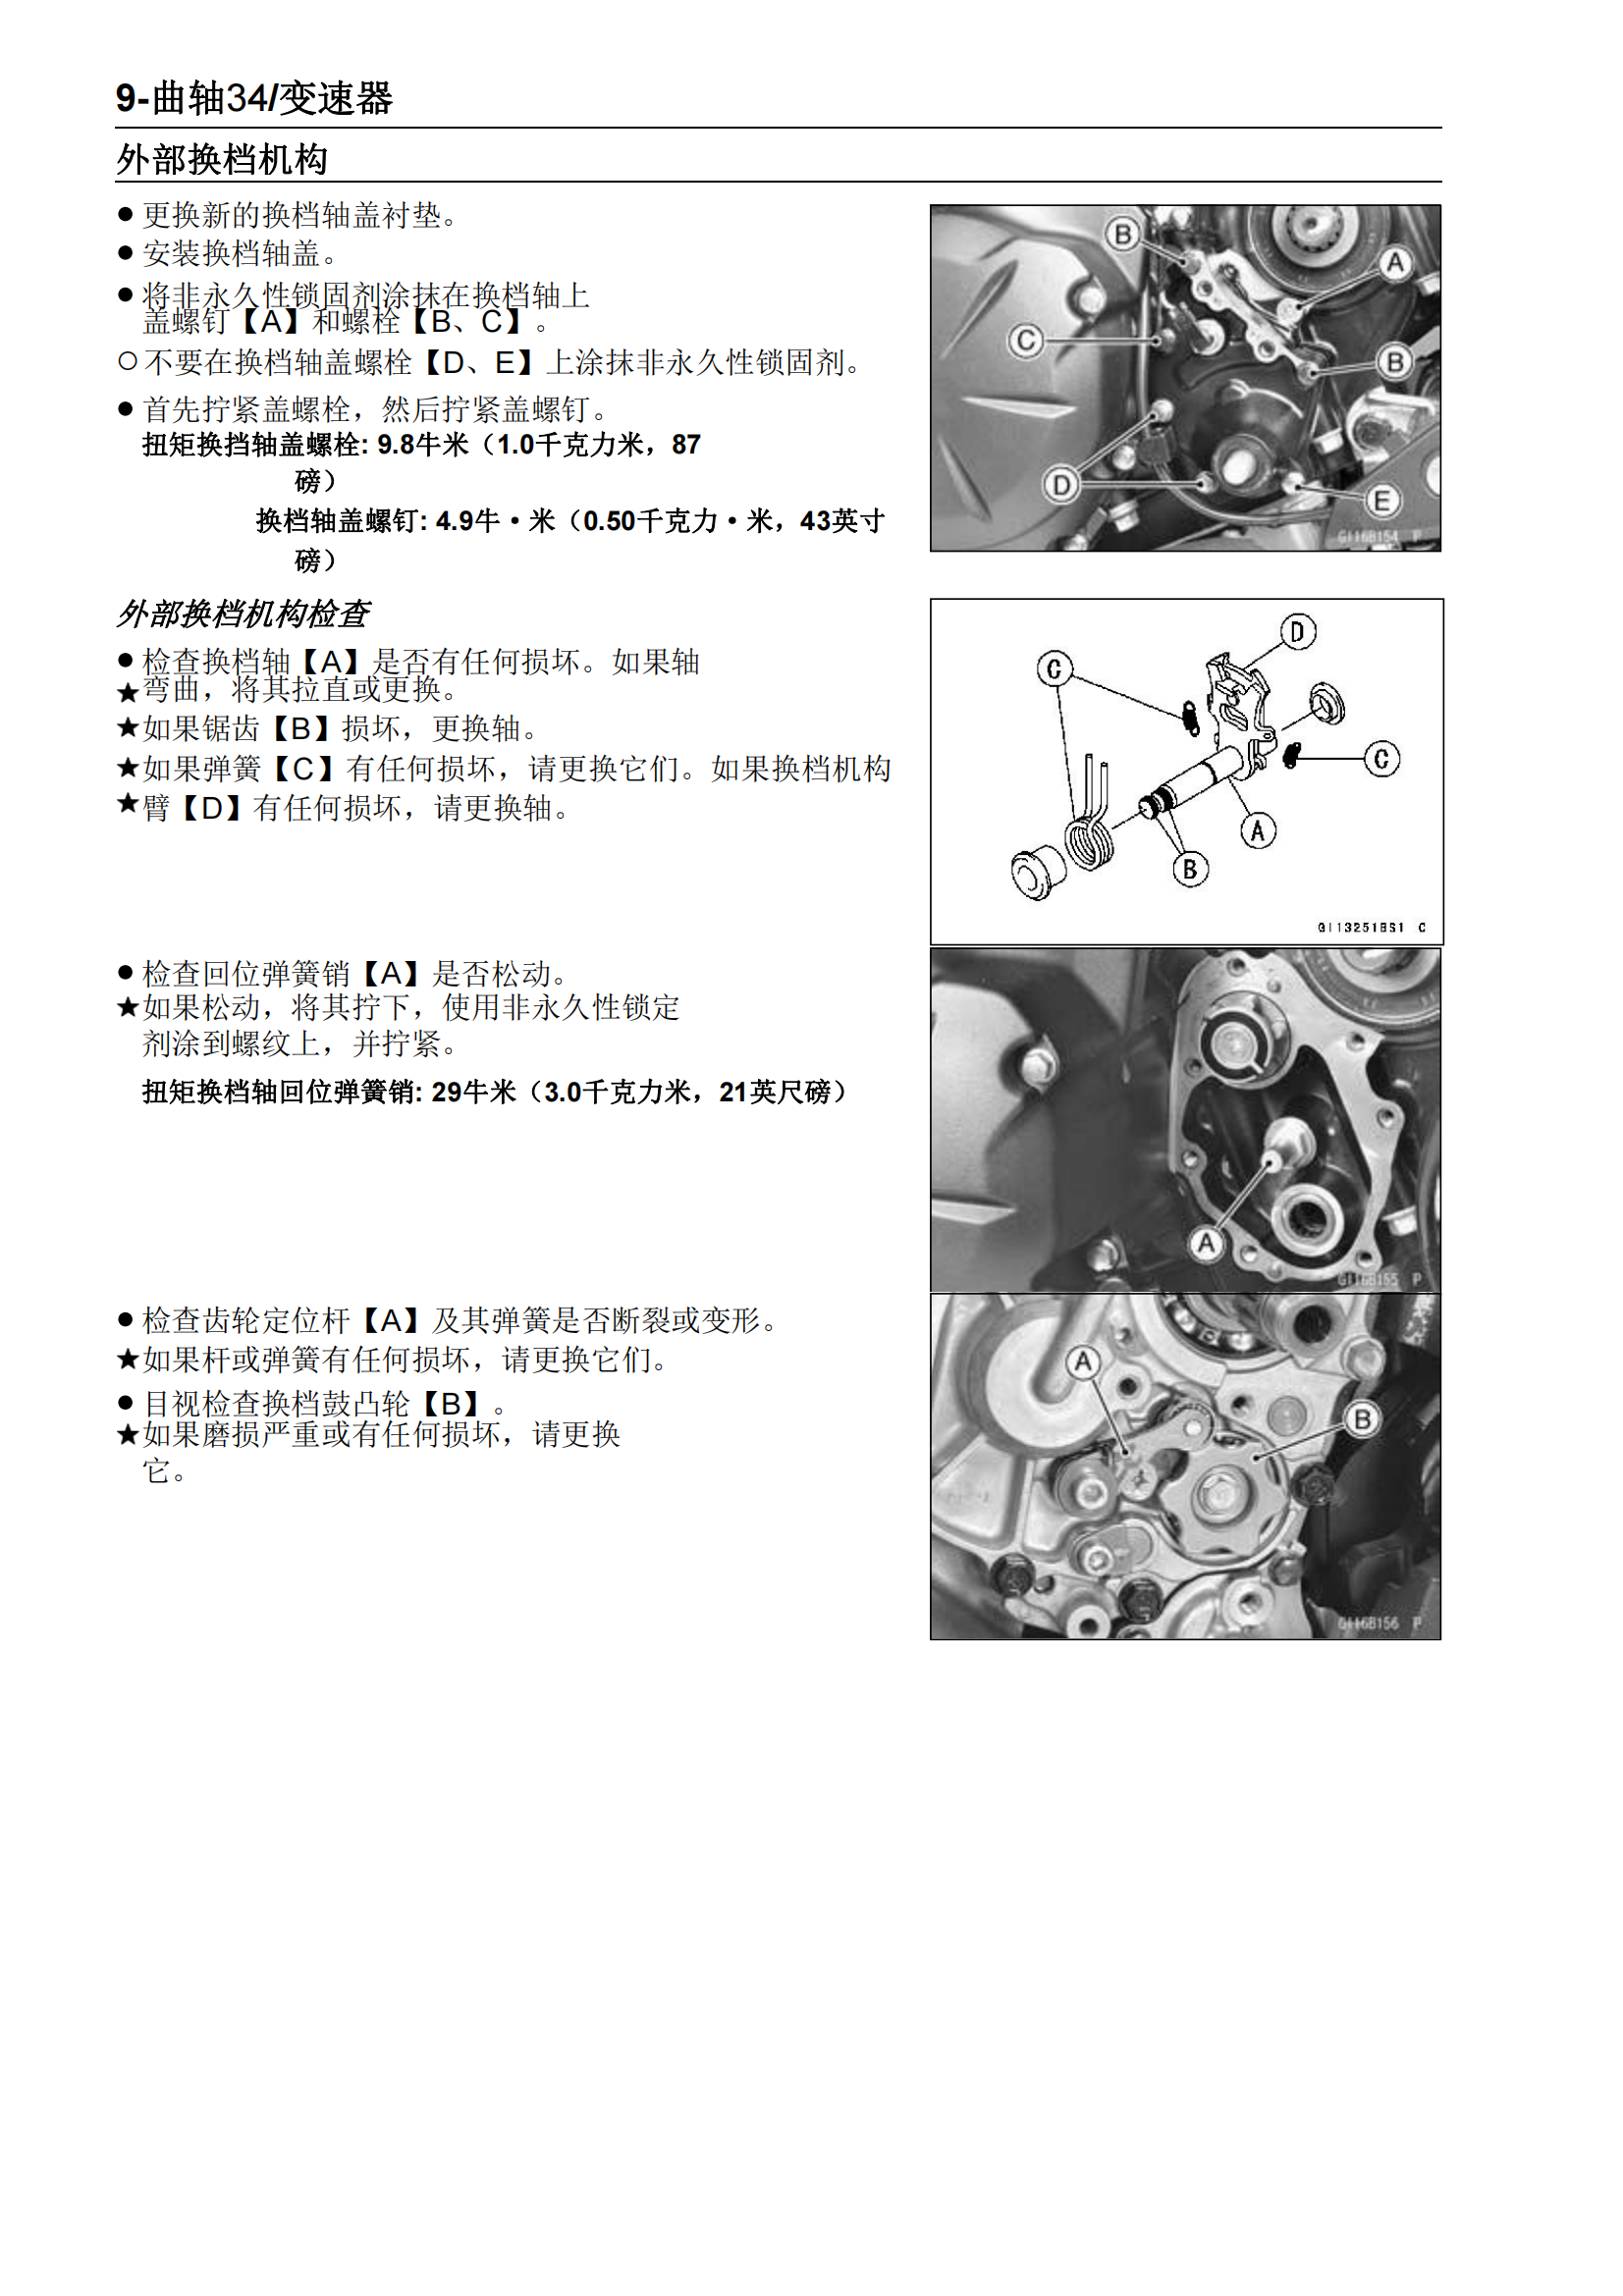 简体中文2010-2014年川崎异兽650abs VERSYS abs维修手册插图4